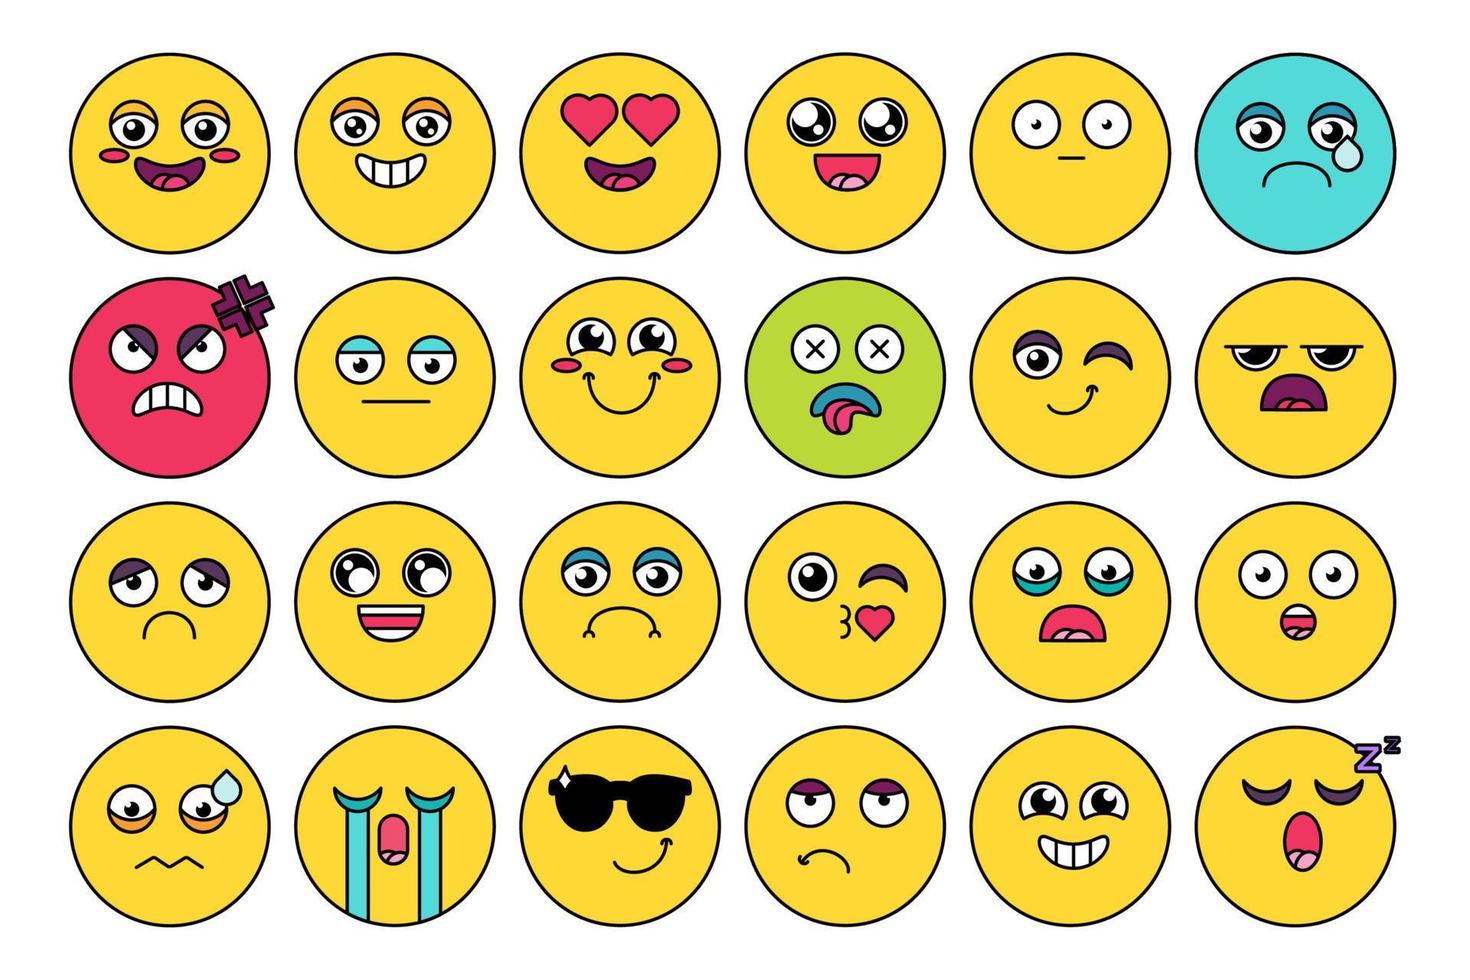 komisch, schattig emoji-stickerpakket vector